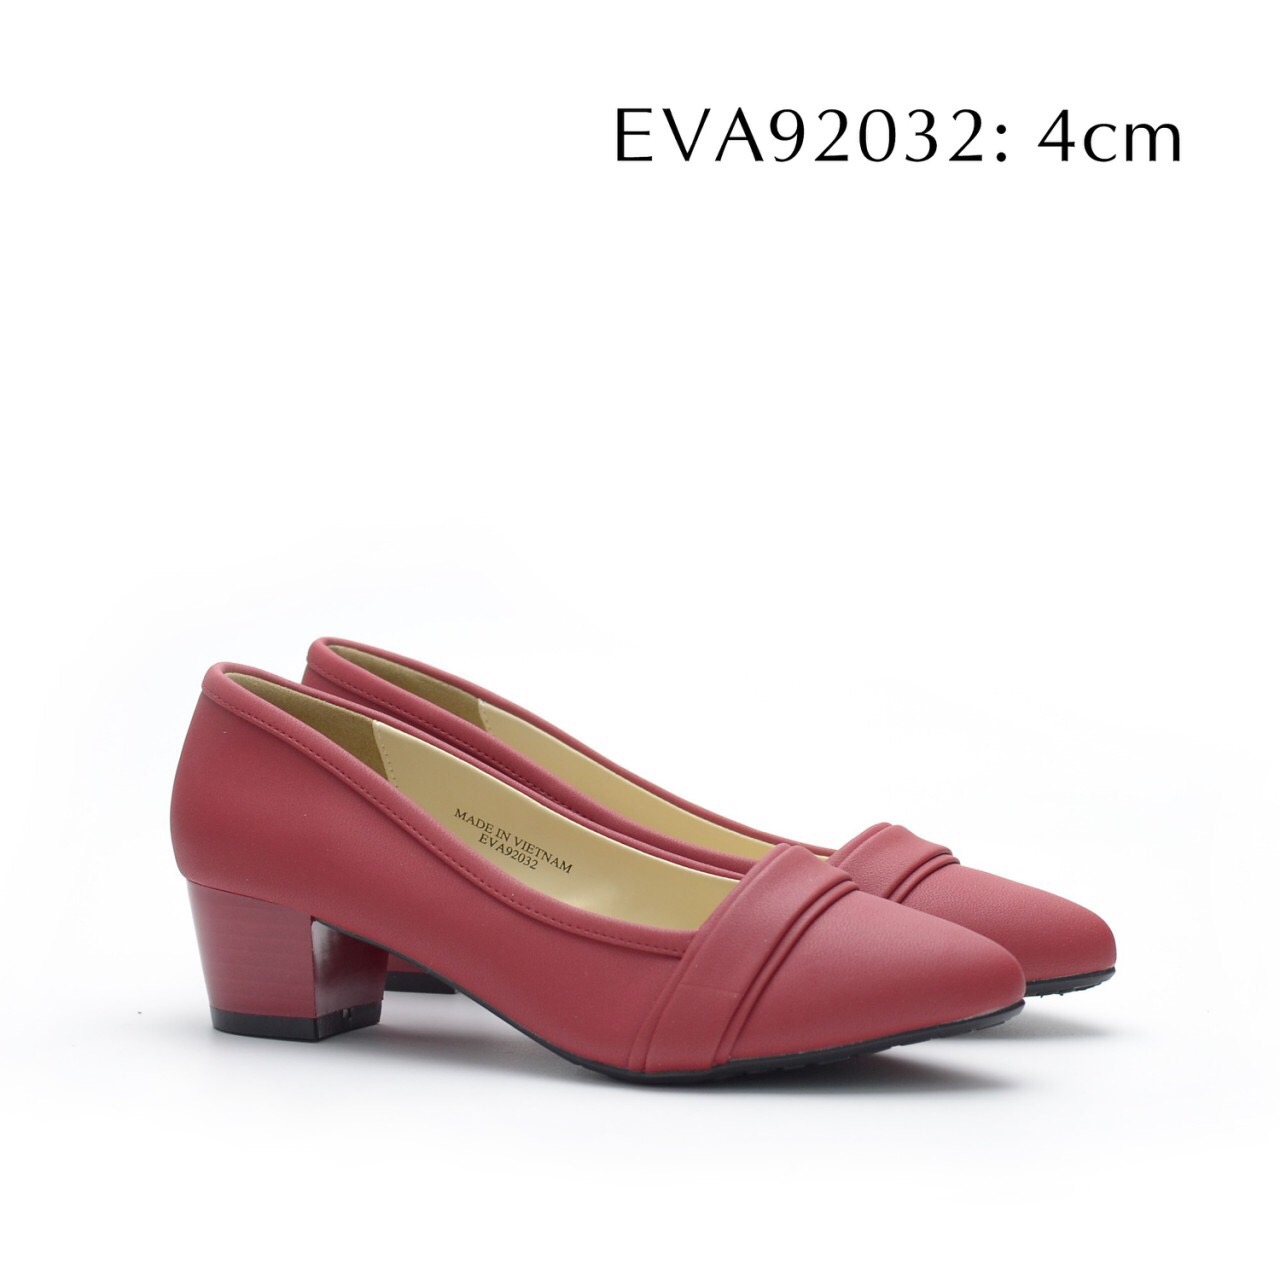 Giày nữ công sở đế vuông EVA92032